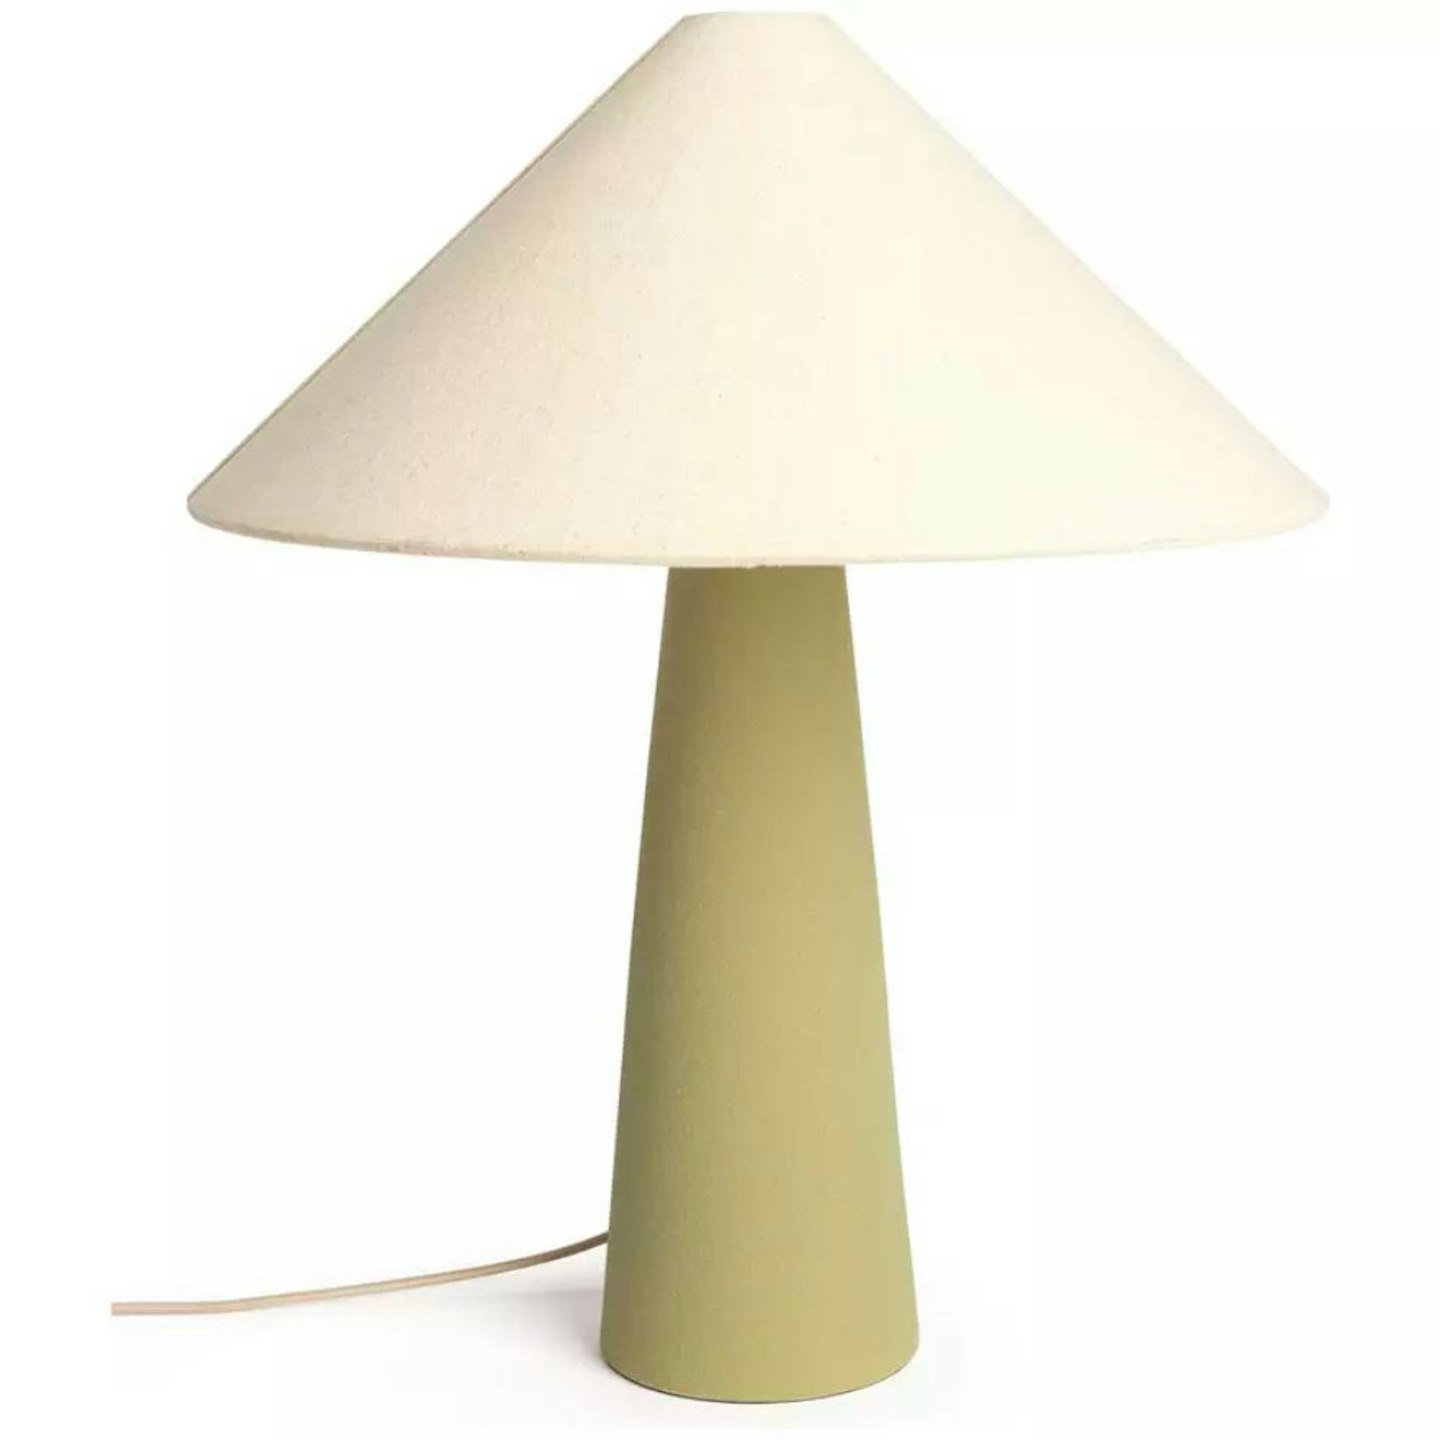 Habitat Conical Ceramic Table Lamp - Beige & Olive